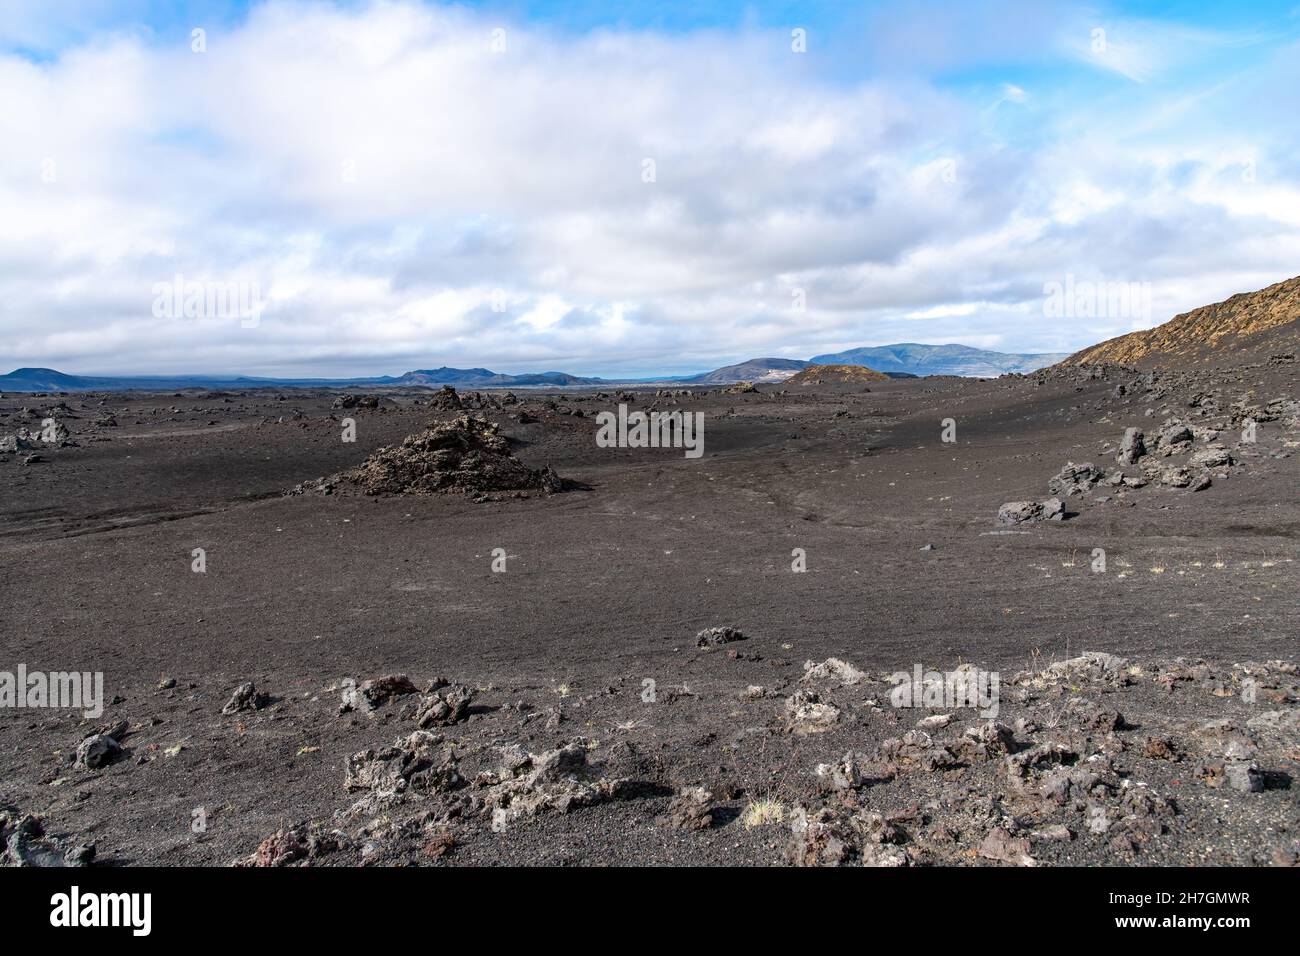 Vista ad angolo basso del paesaggio arido di roccia lavica nera dal vicino vulcano Katla sull'Islanda con montagne sullo sfondo Foto Stock